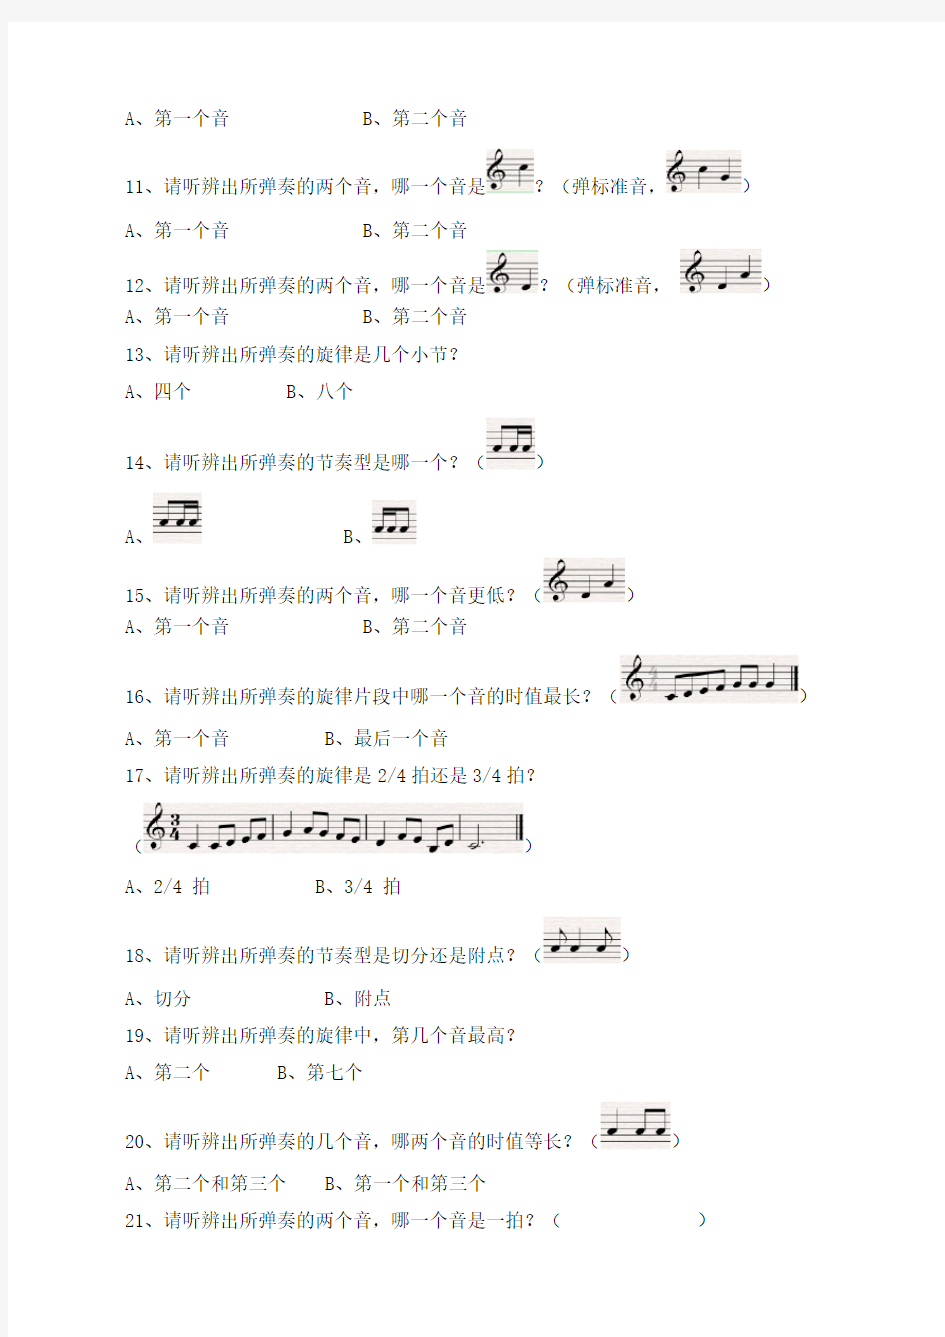 中国音乐学院 基本乐科第一级笔试试卷大纲